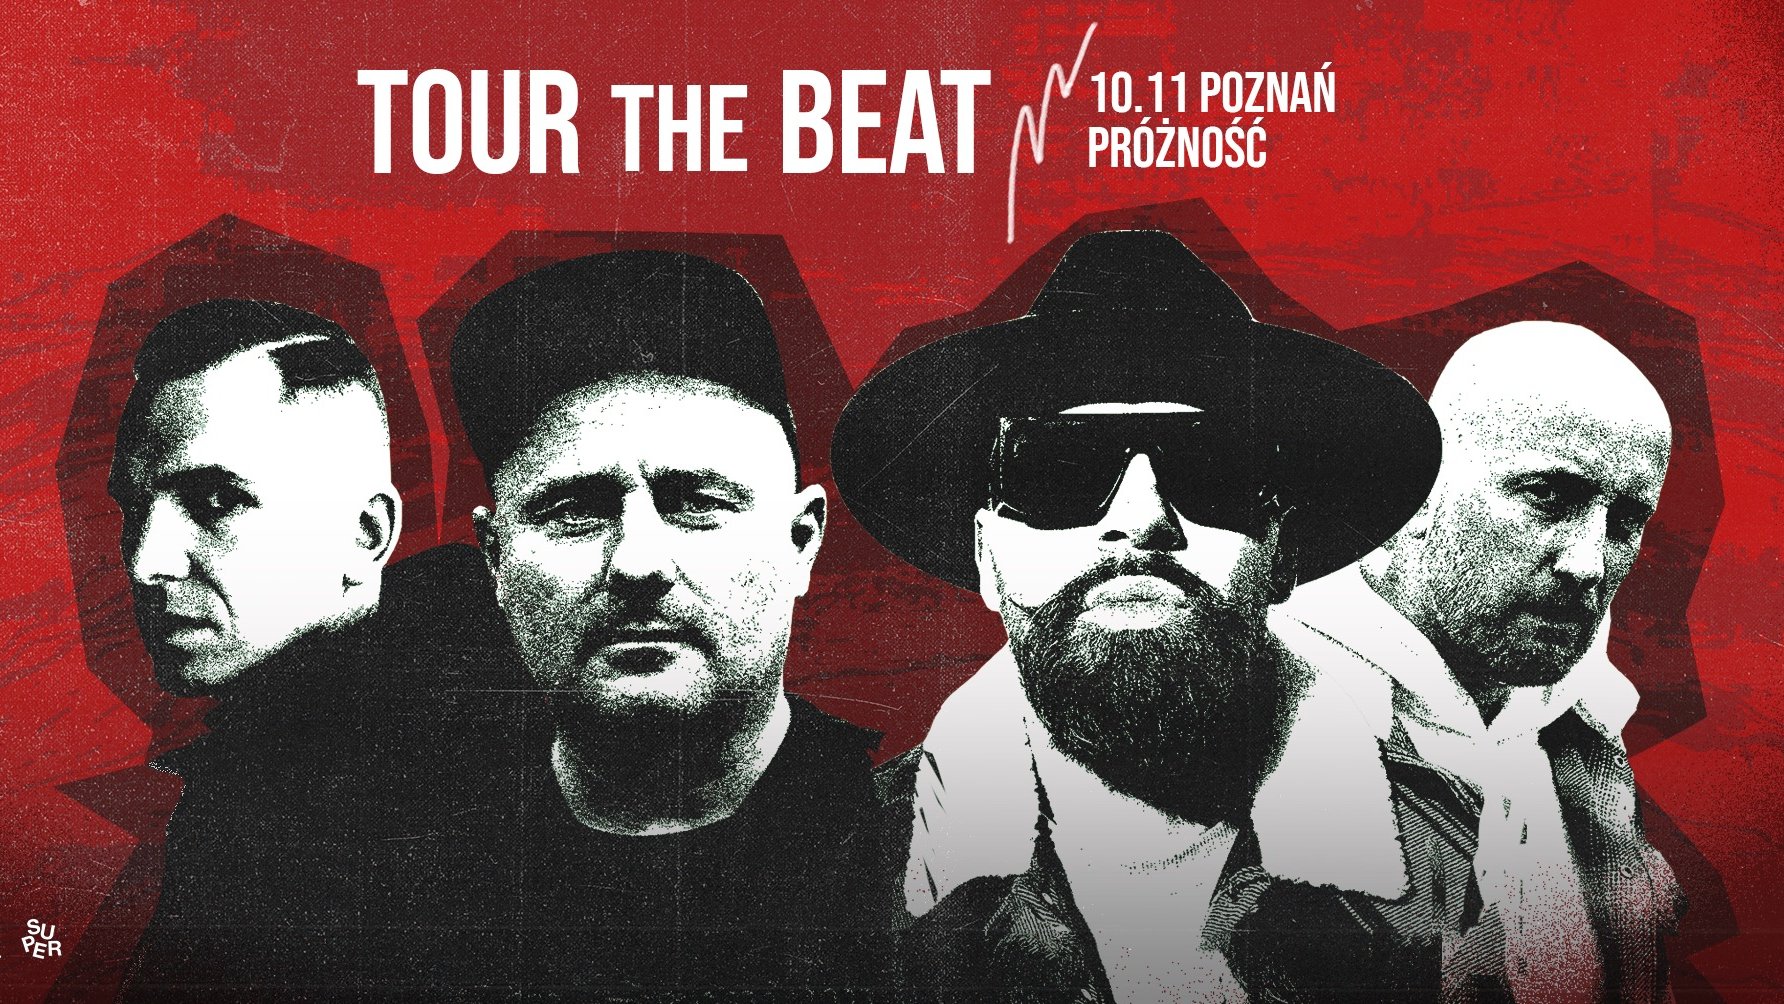 Plakat ze szczegółami dotyczącymi wydarzenia Toure the beat.